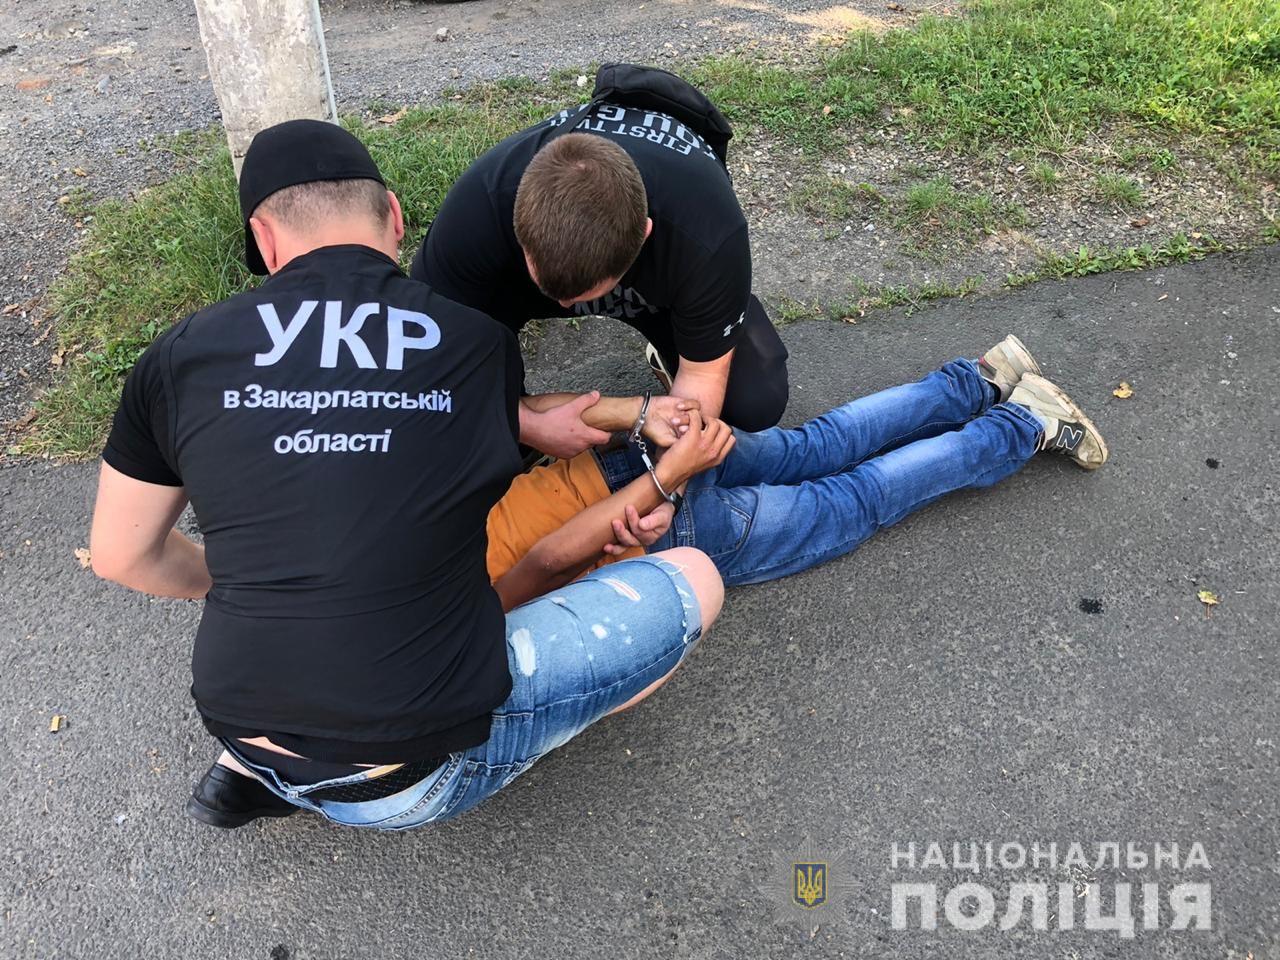 Погоджено підозру 15-річному підлітку, який з пістолетом пограбував АЗС в Ужгороді